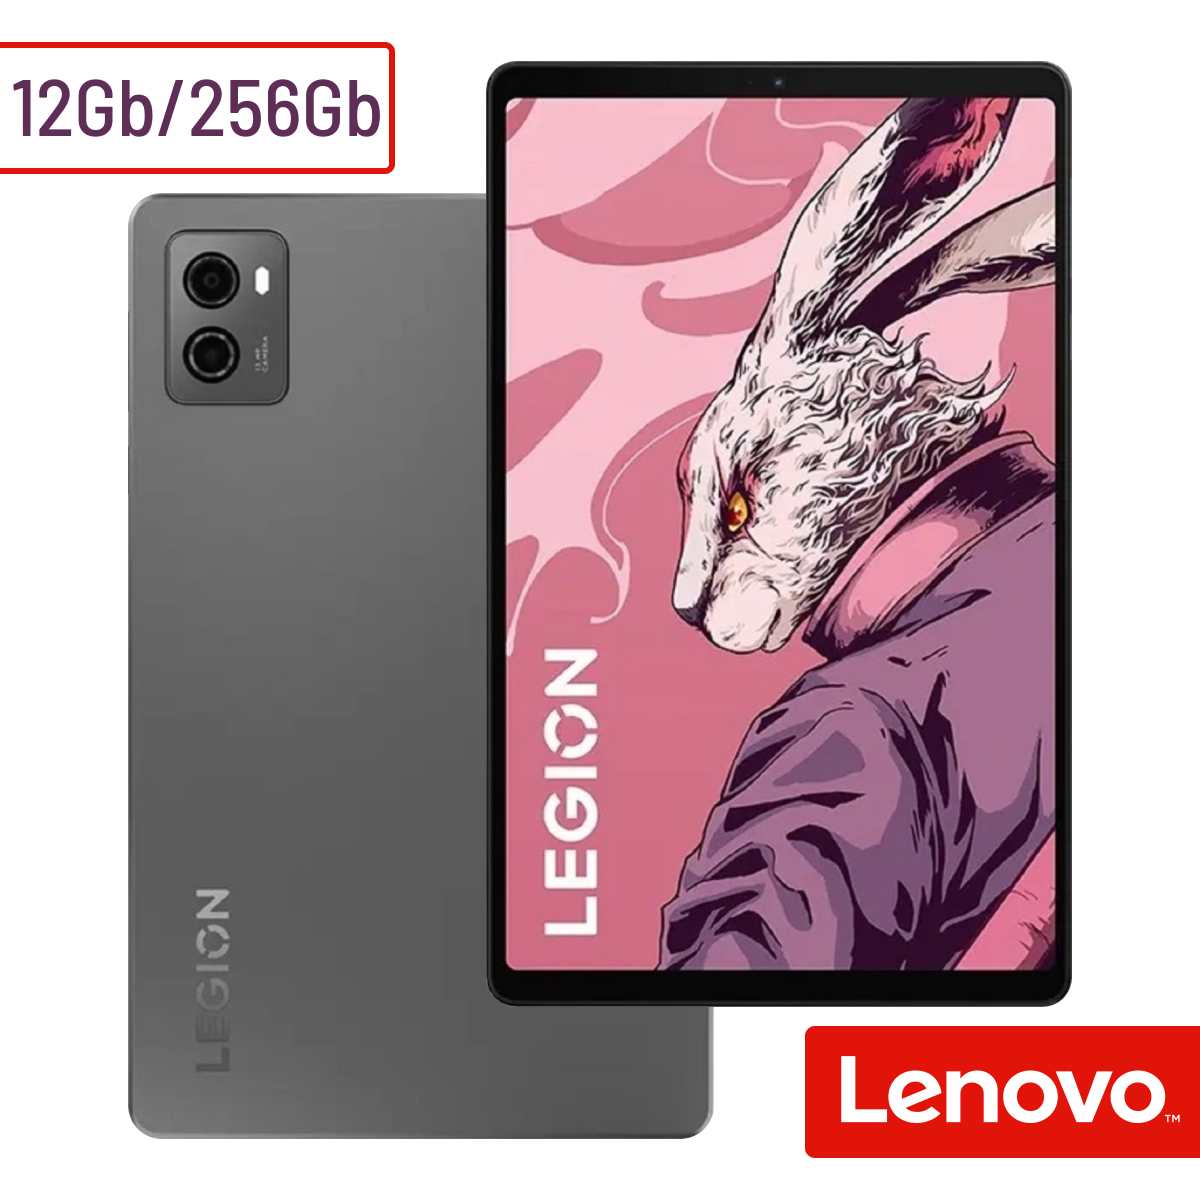 Планшет Lenovo Legion Y700 (TB320FC) 12GB/256GB Storm Grey - купить в MagDevice, цена на Мегамаркет